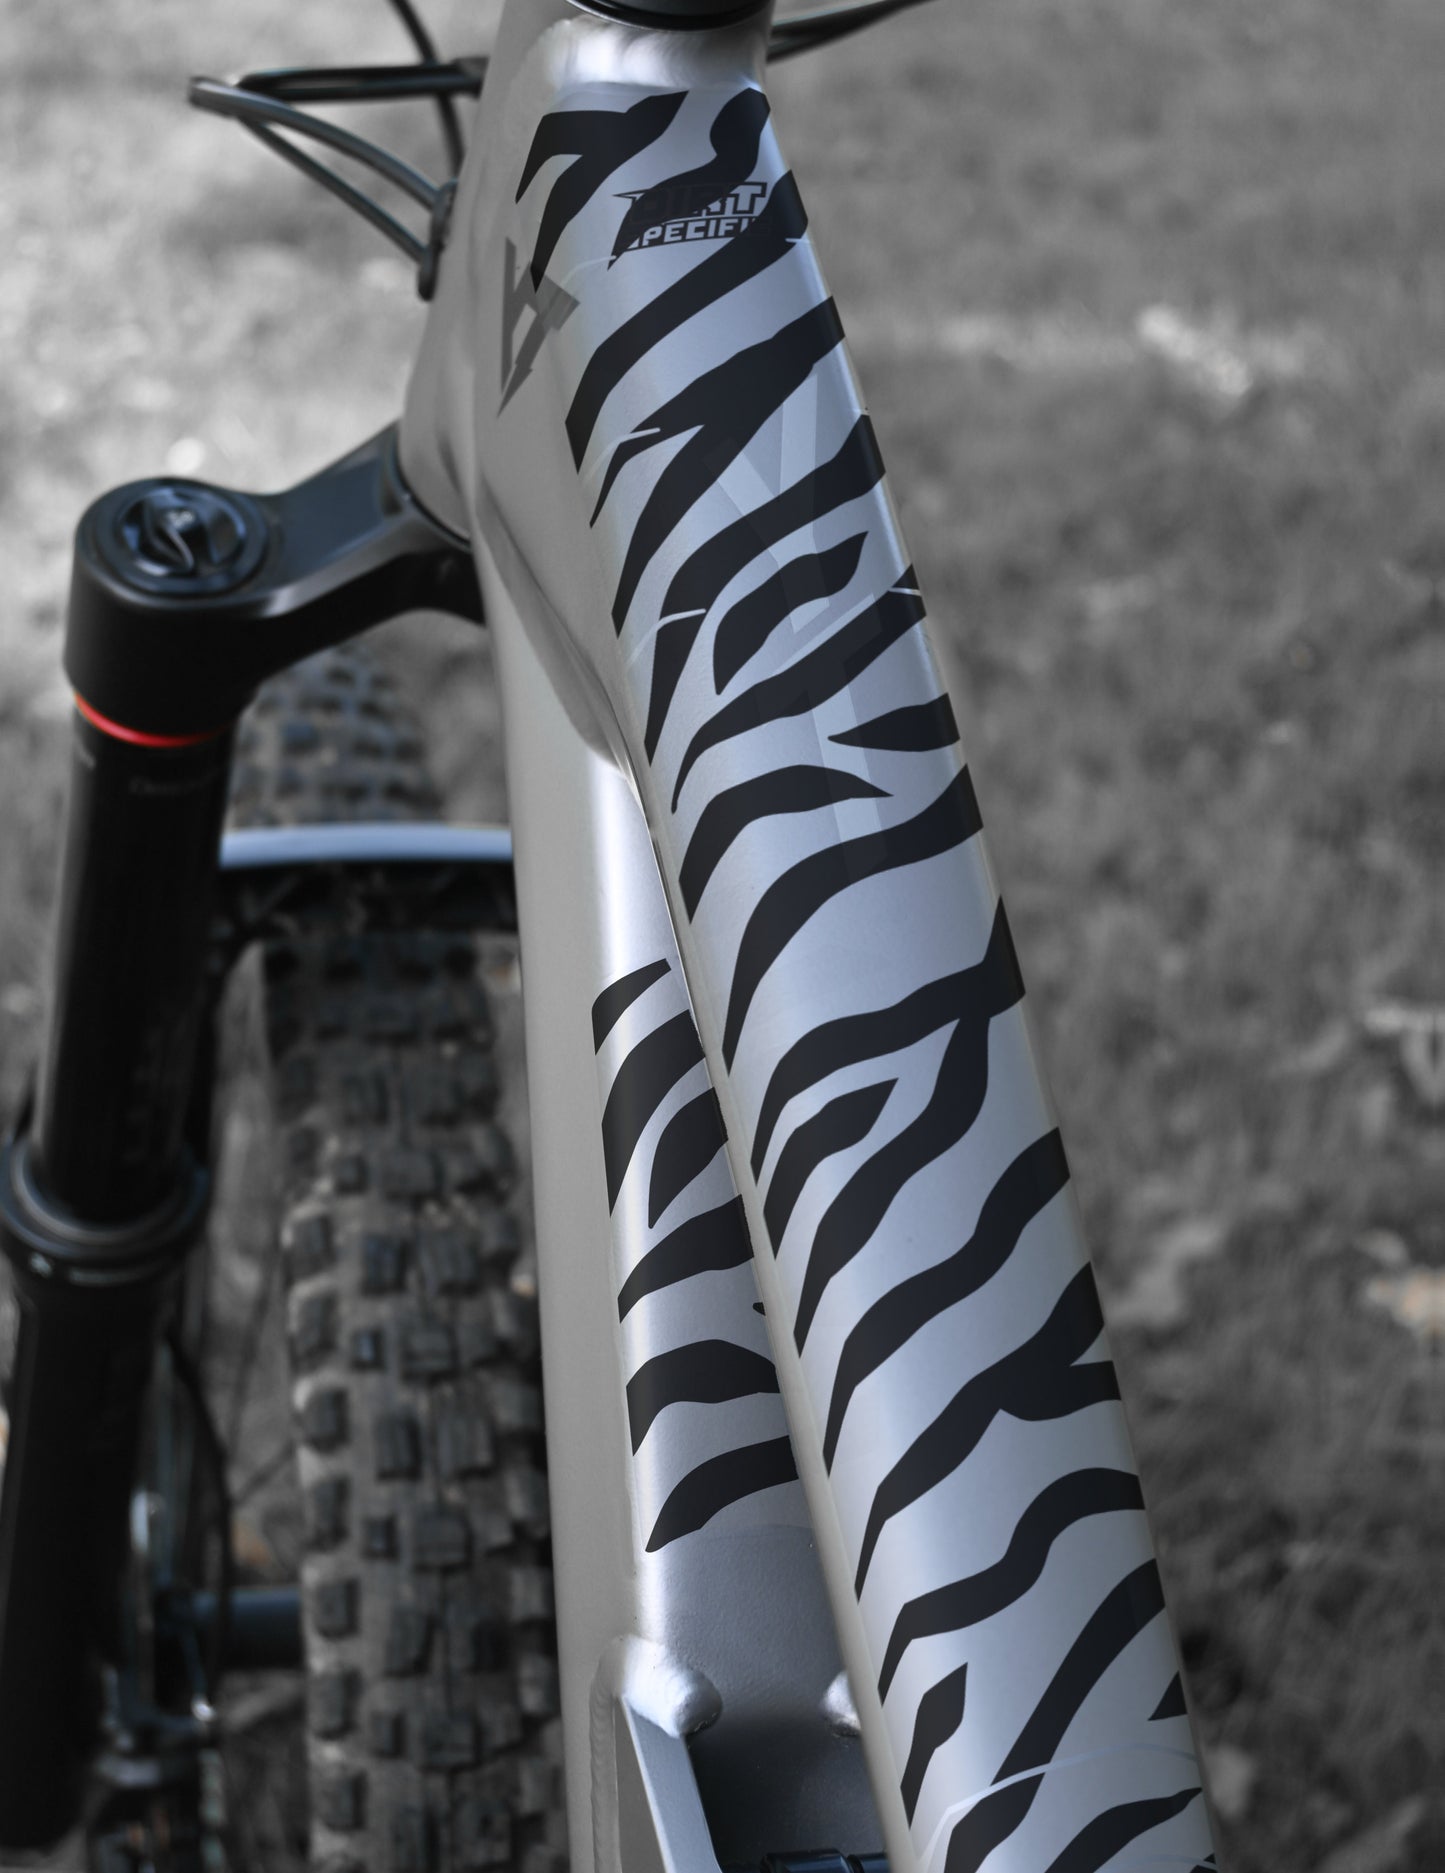 Black zebra bike decal